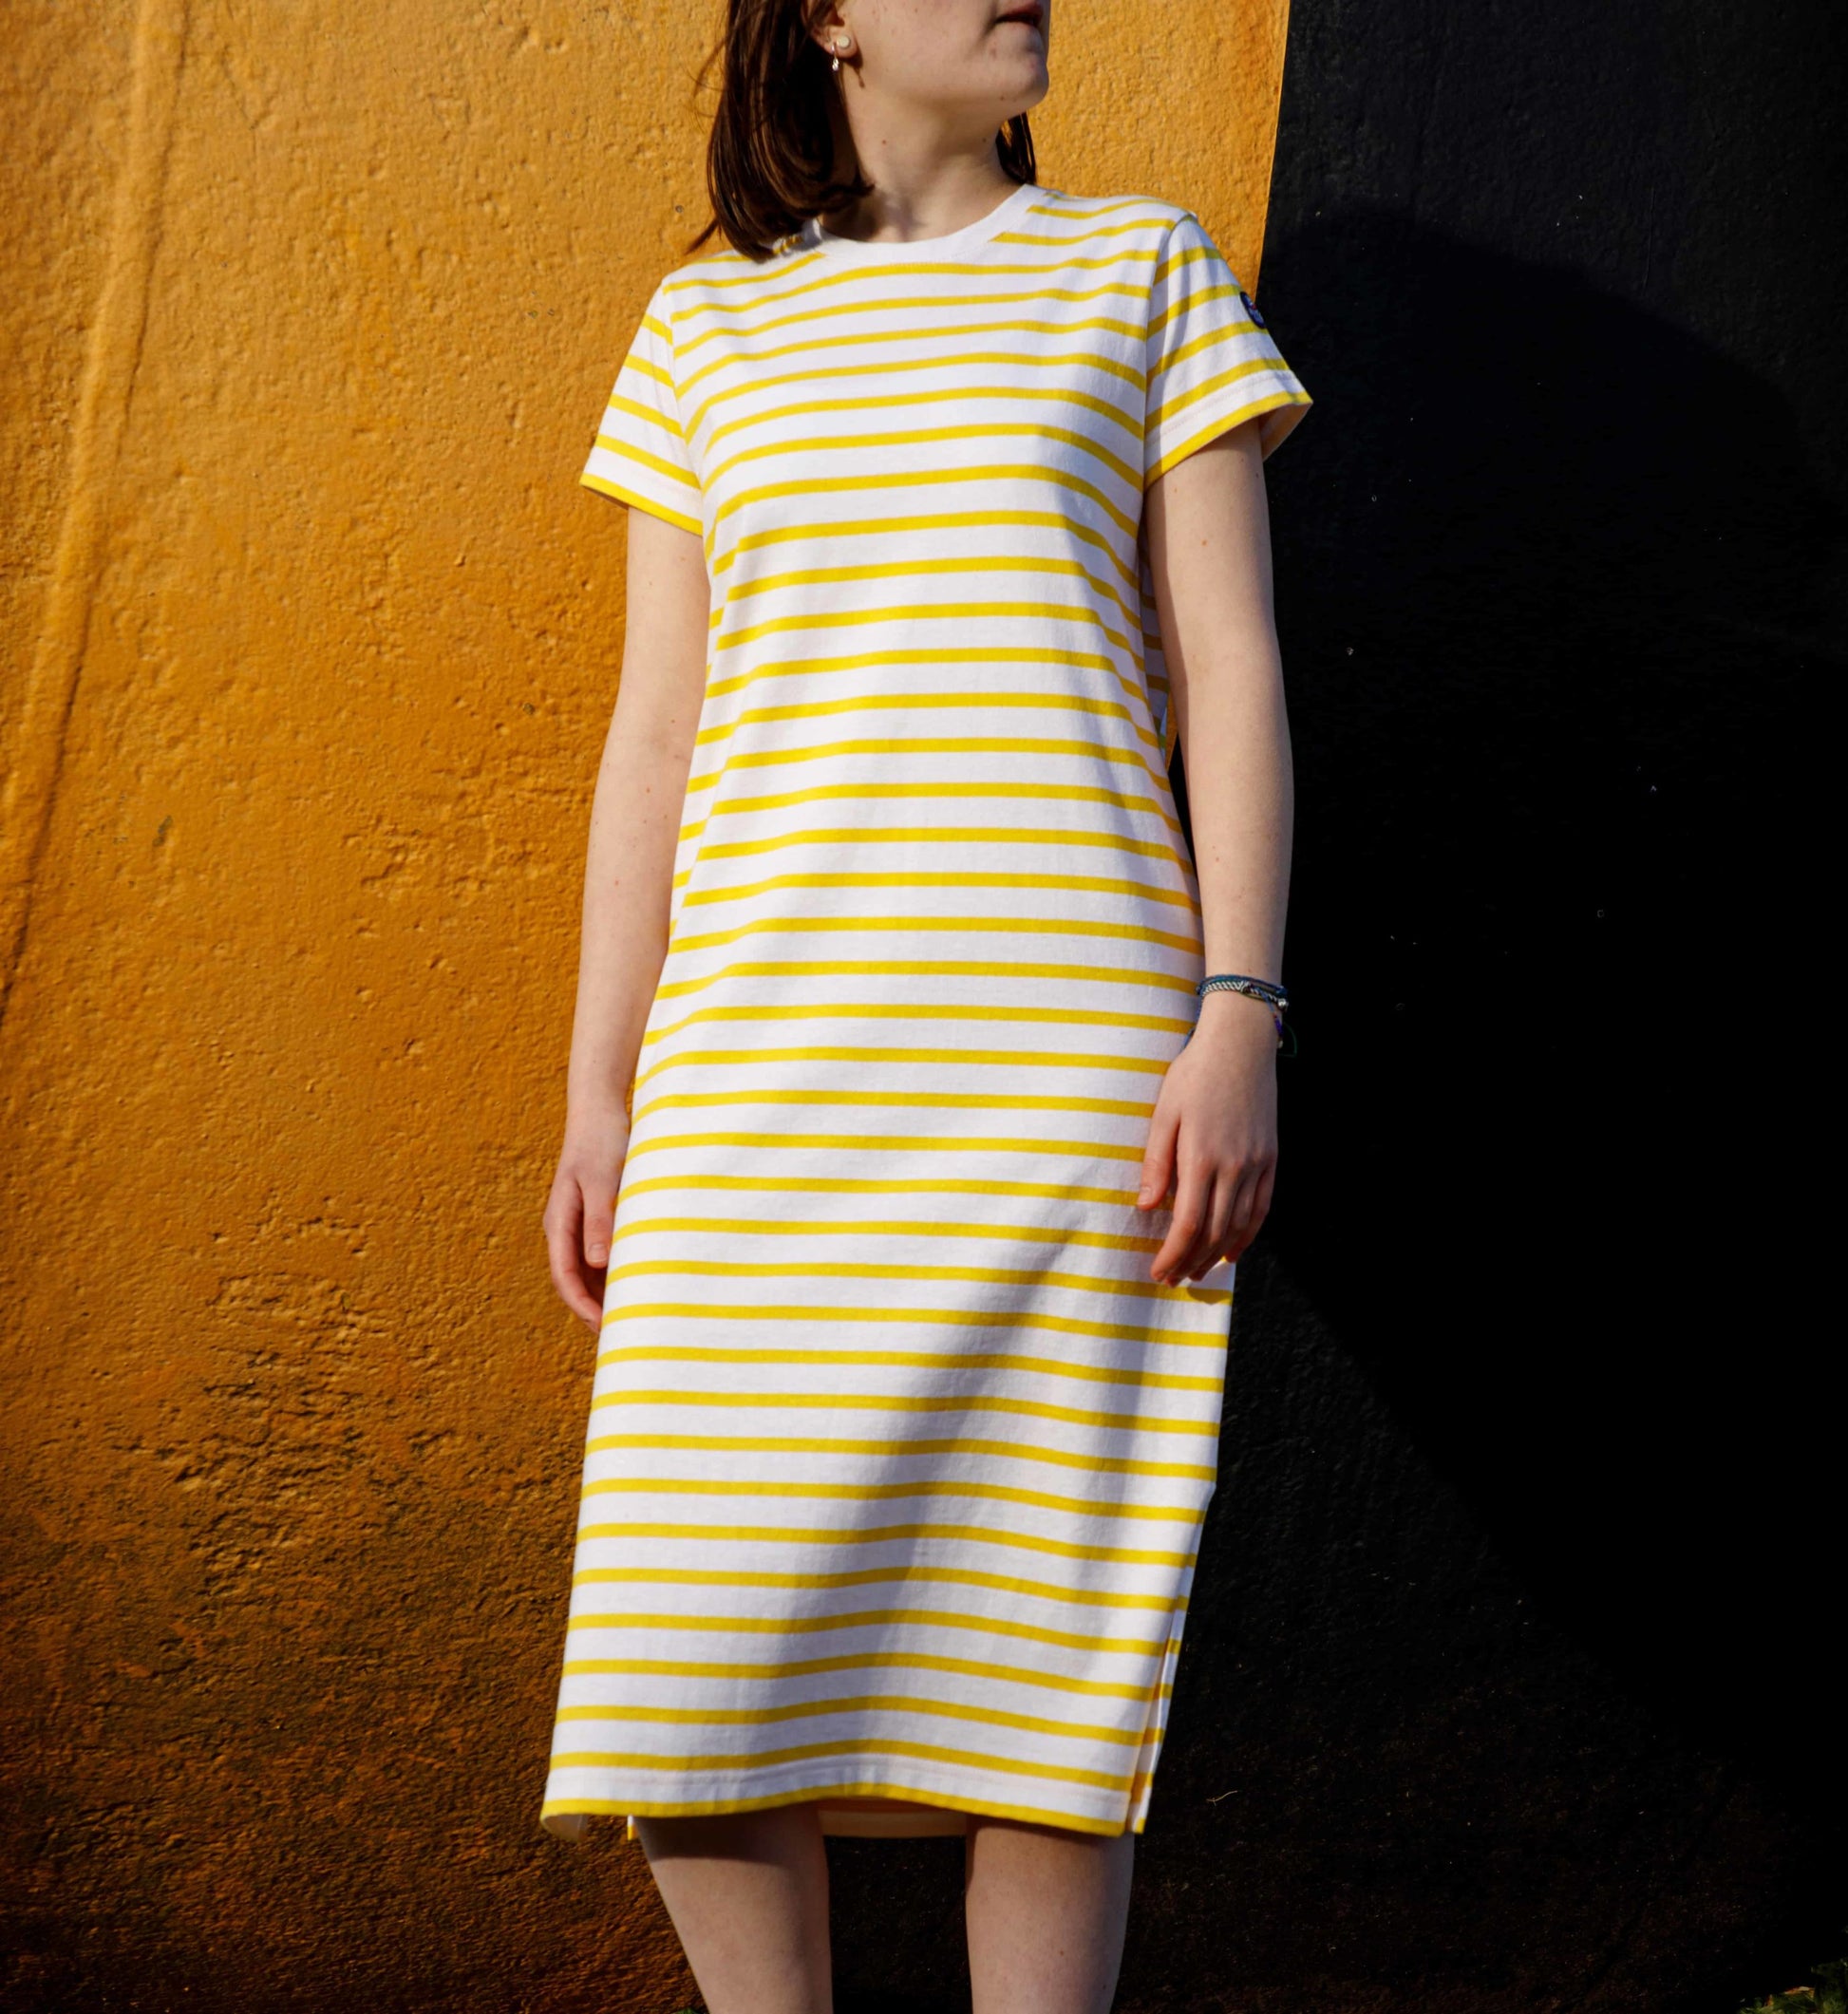 Two-tone striped dress